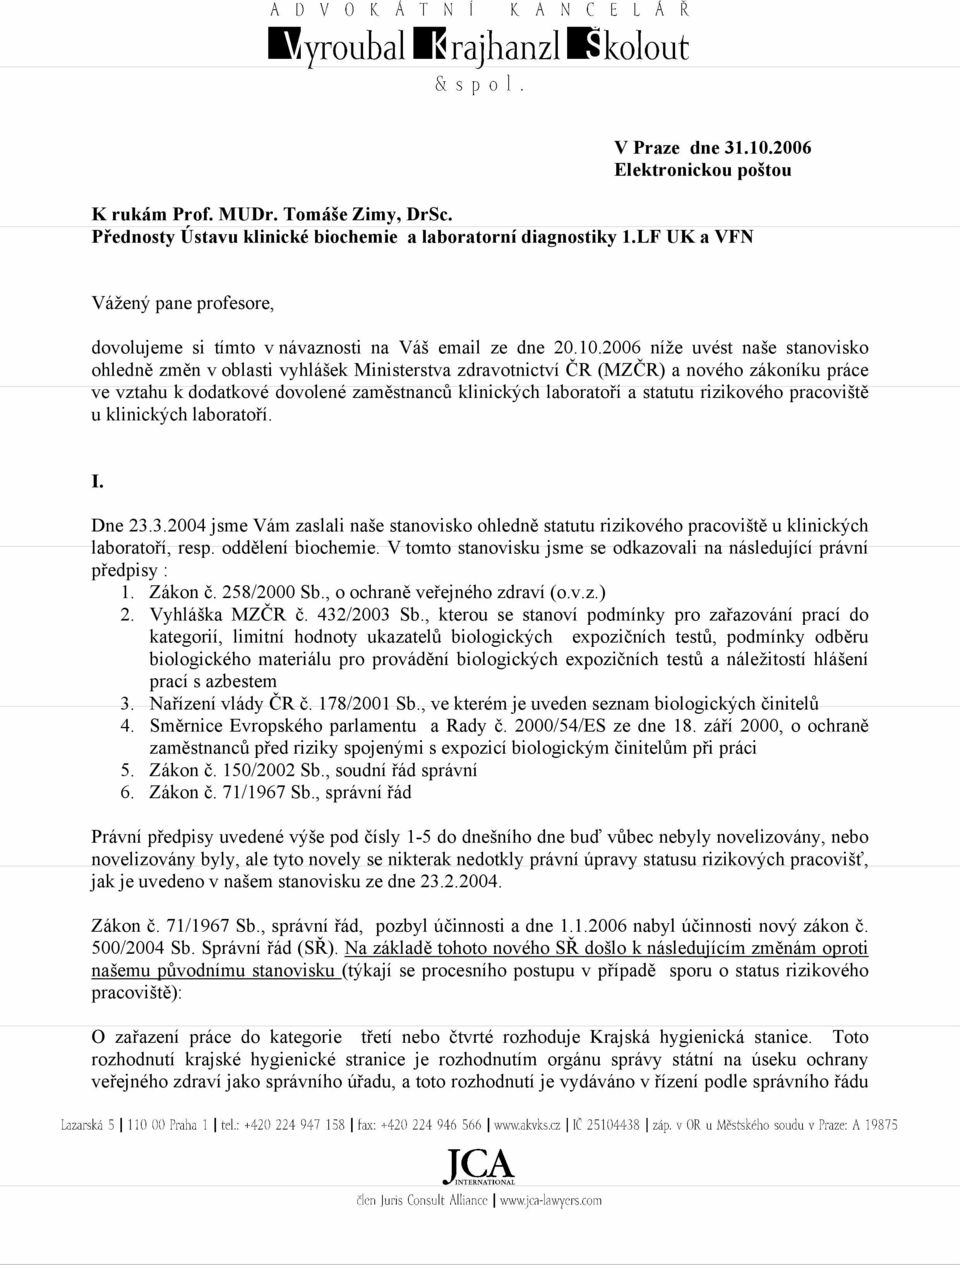 2006 níže uvést naše stanovisko ohledně změn v oblasti vyhlášek Ministerstva zdravotnictví ČR (MZČR) a nového zákoníku práce ve vztahu k dodatkové dovolené zaměstnanců klinických laboratoří a statutu